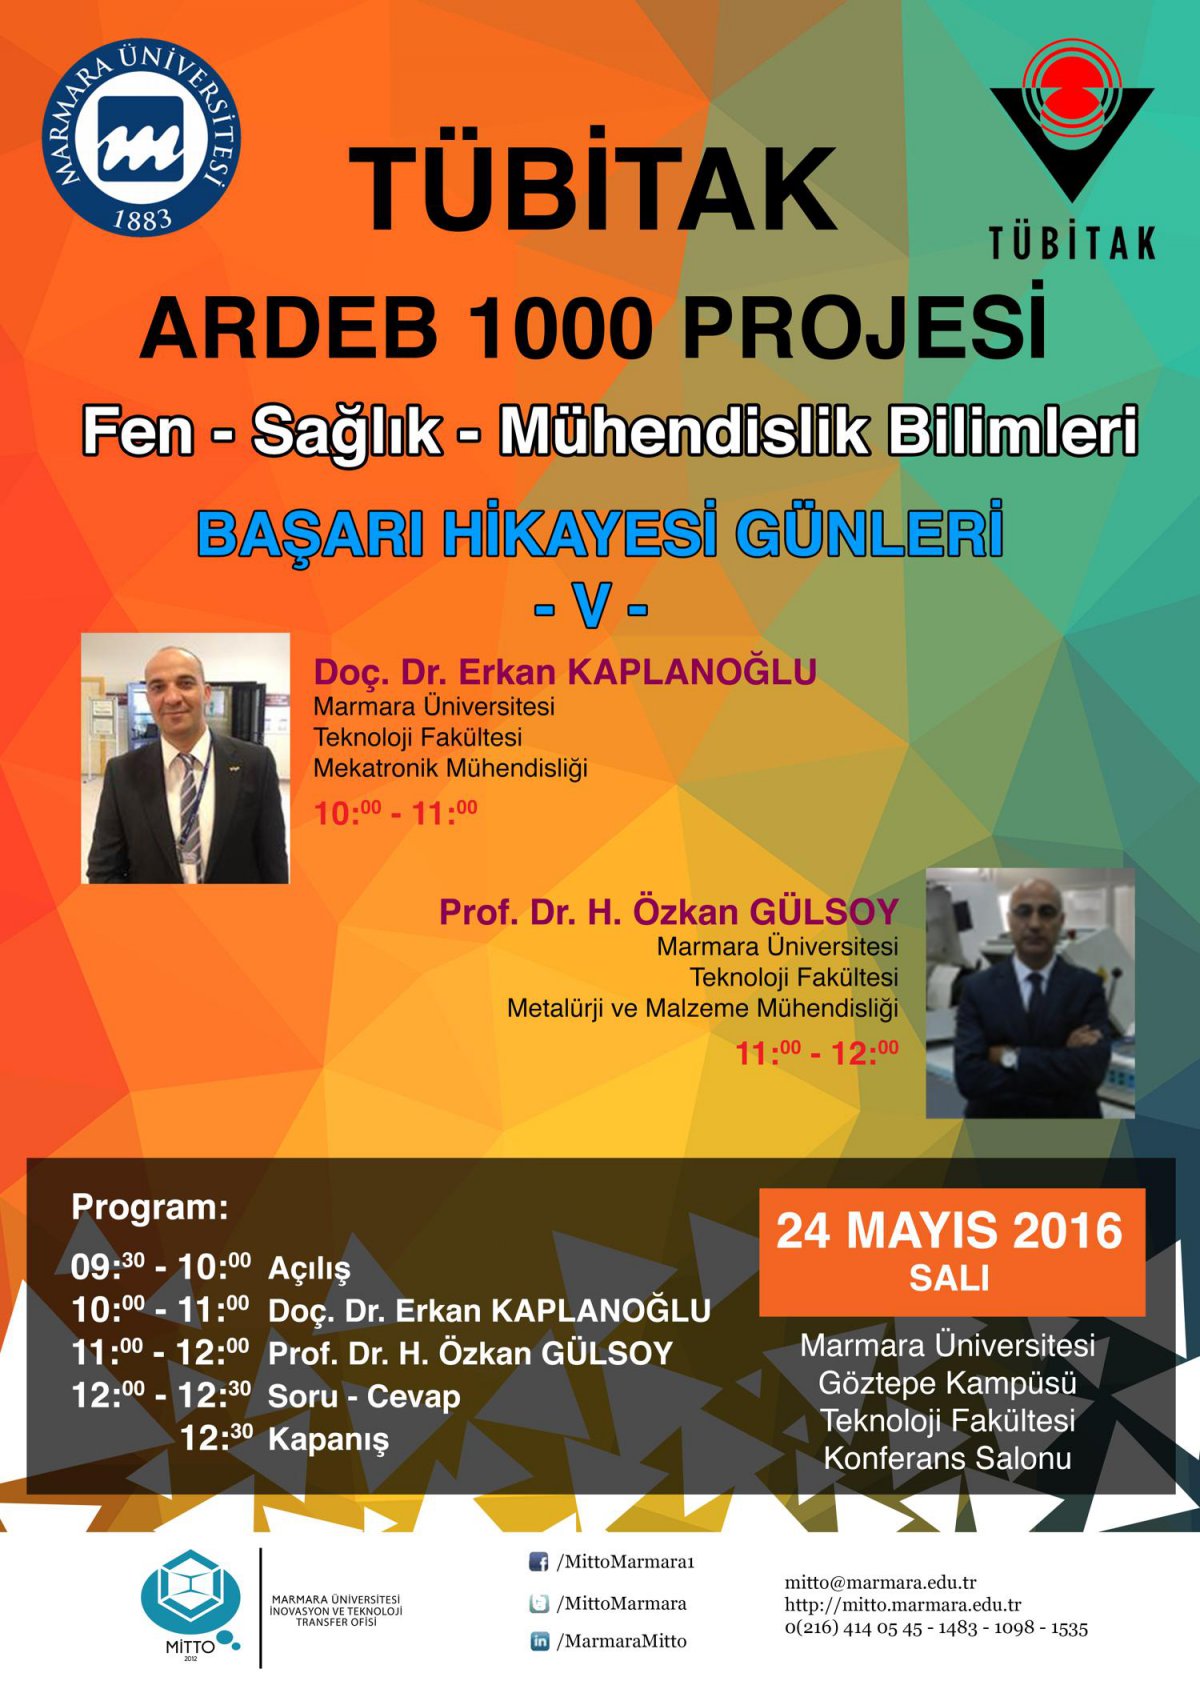 Tübitak ARDEB 1000 Projesi “Başarı Hikayeleri Günleri” Etkinliği Gerçekleştirildi